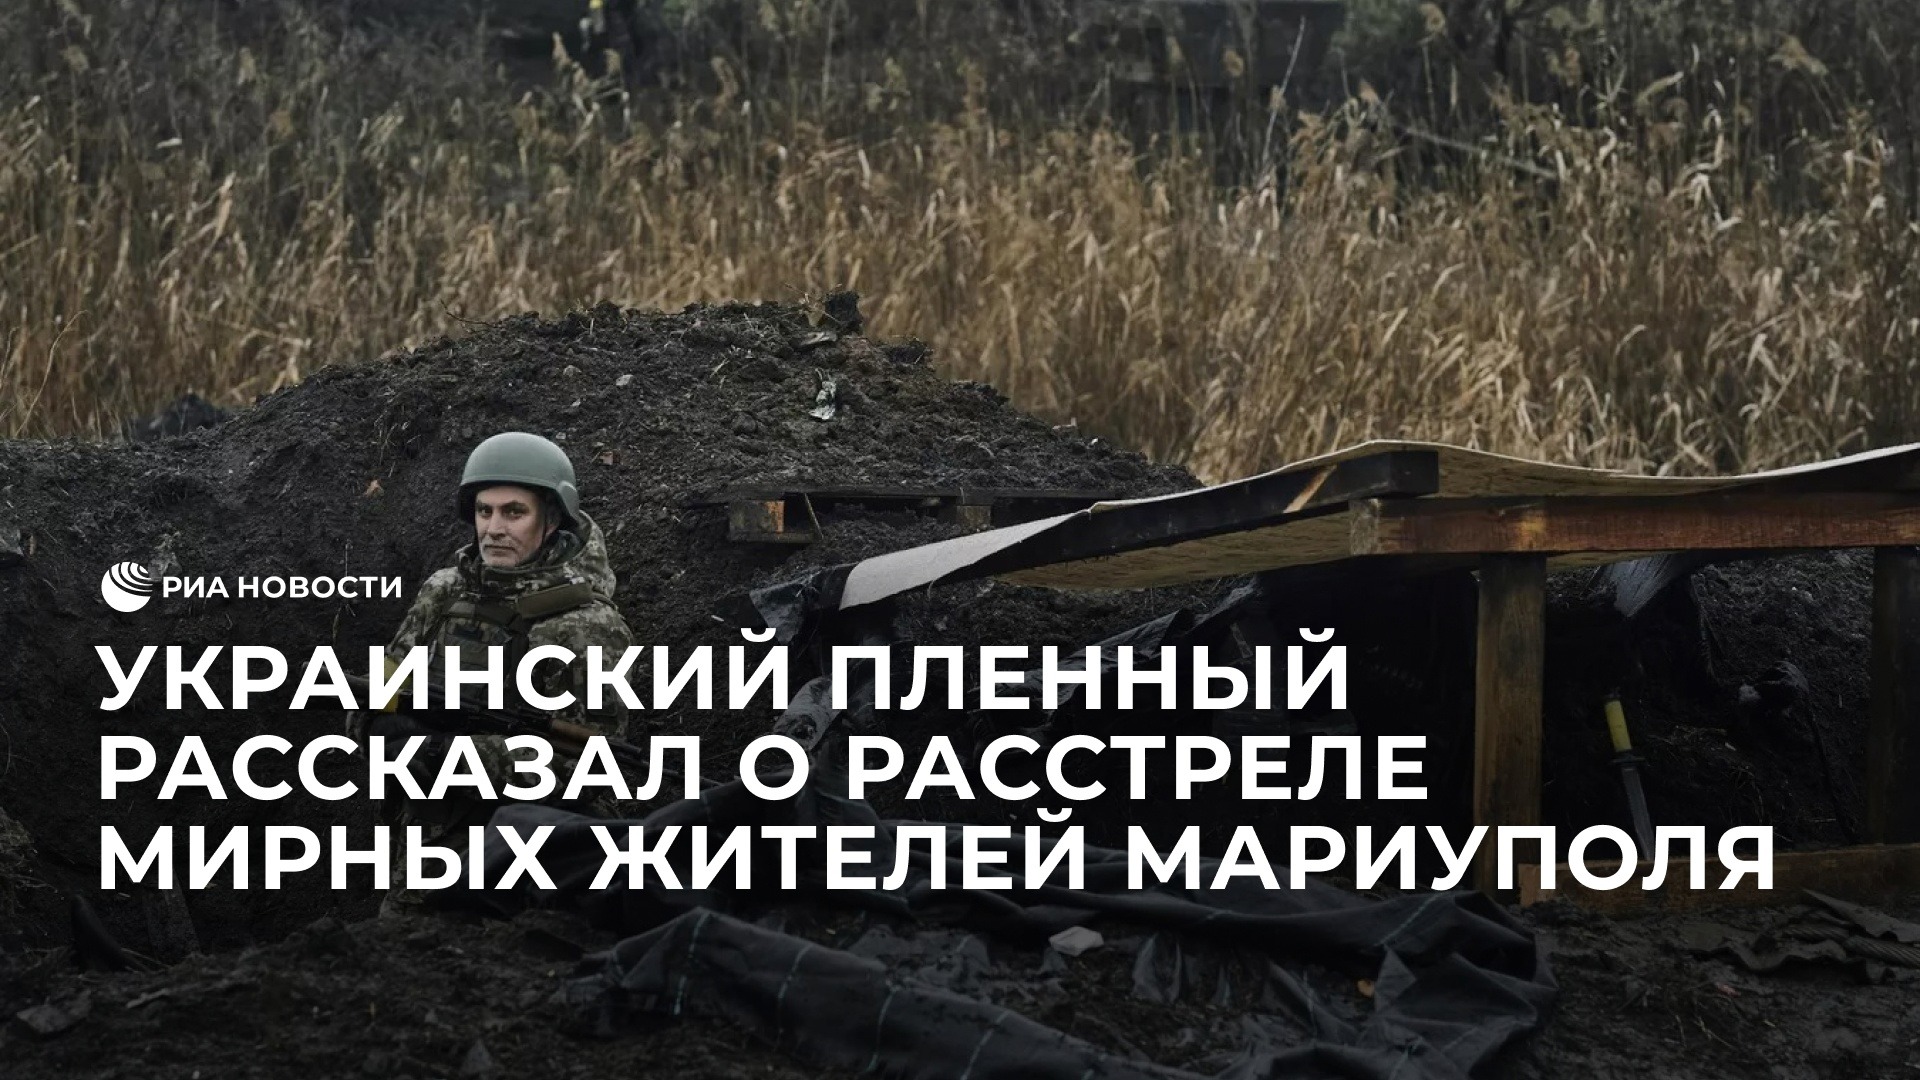 Украинский пленный рассказал о расстреле восьми мирных жителей Мариуполя